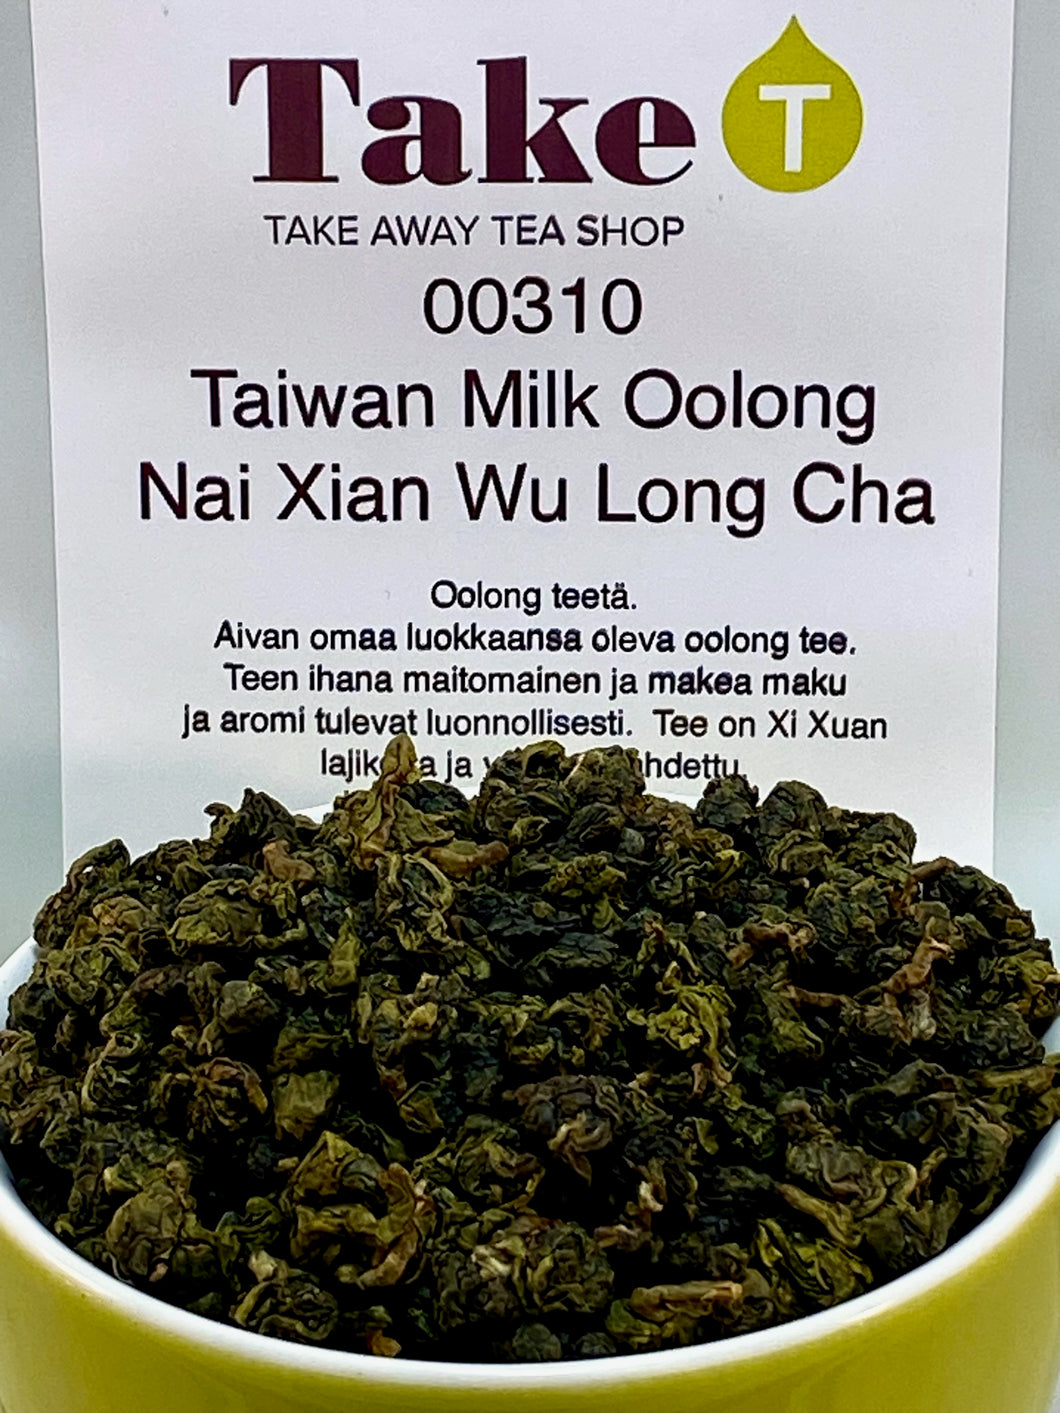 Taiwan Milk Oolong Nai Xian Wu Long Cha